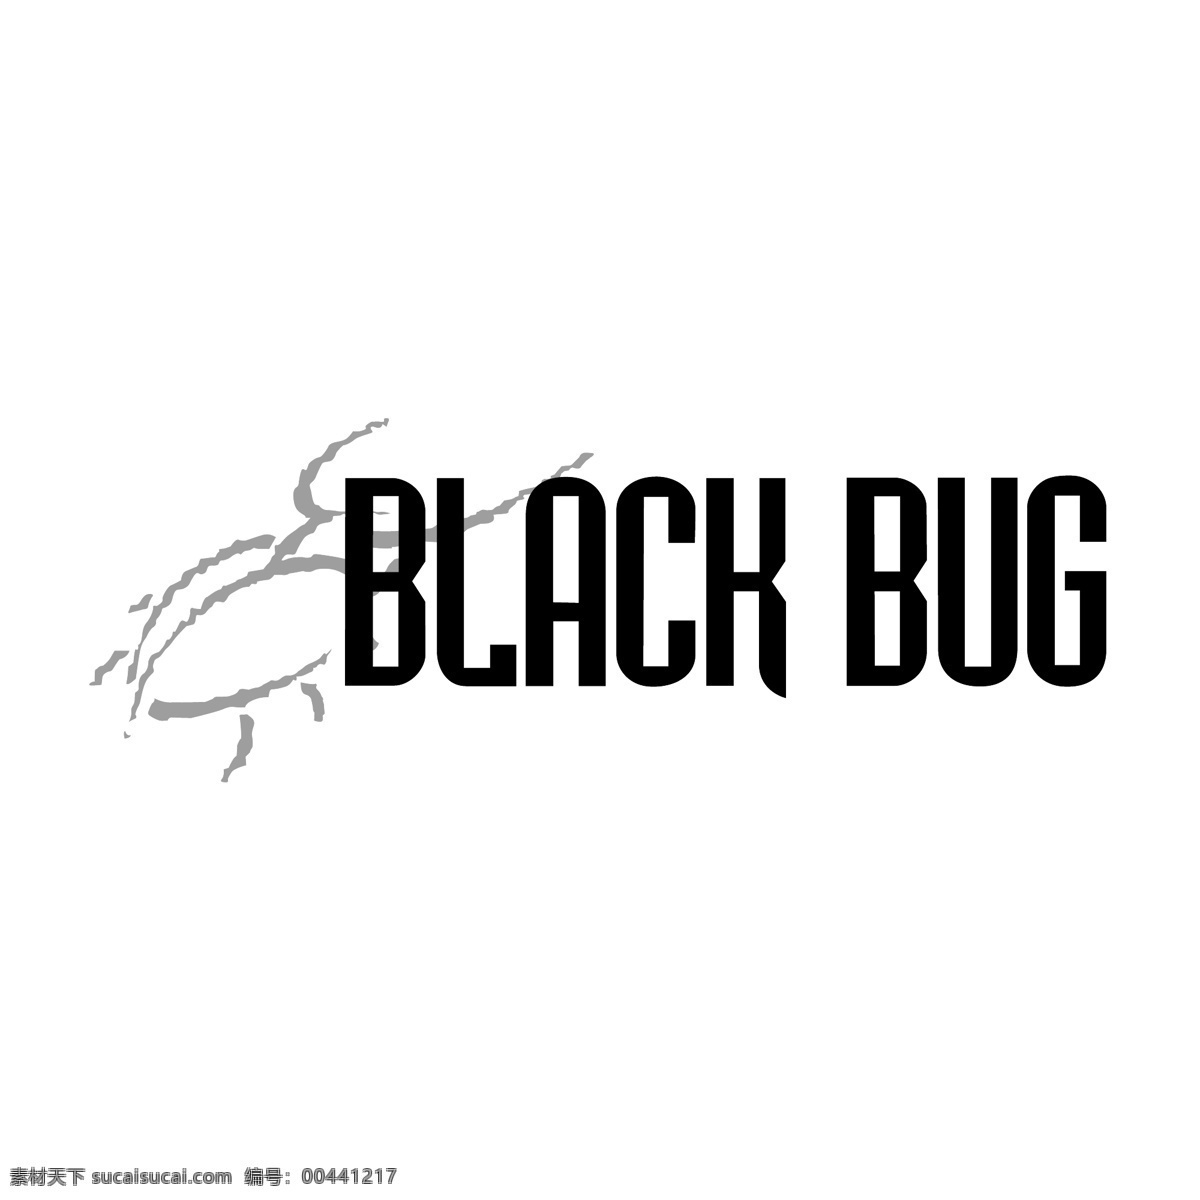 黑虫子 黑 黑人 黑色 黑臭虫 臭虫 矢量黑臭虫 白色 剪辑 艺术 自由 bug 错误 矢量 小 虫 矢量黑白虫 虫子 虫子黑白矢量 图形 建筑家居